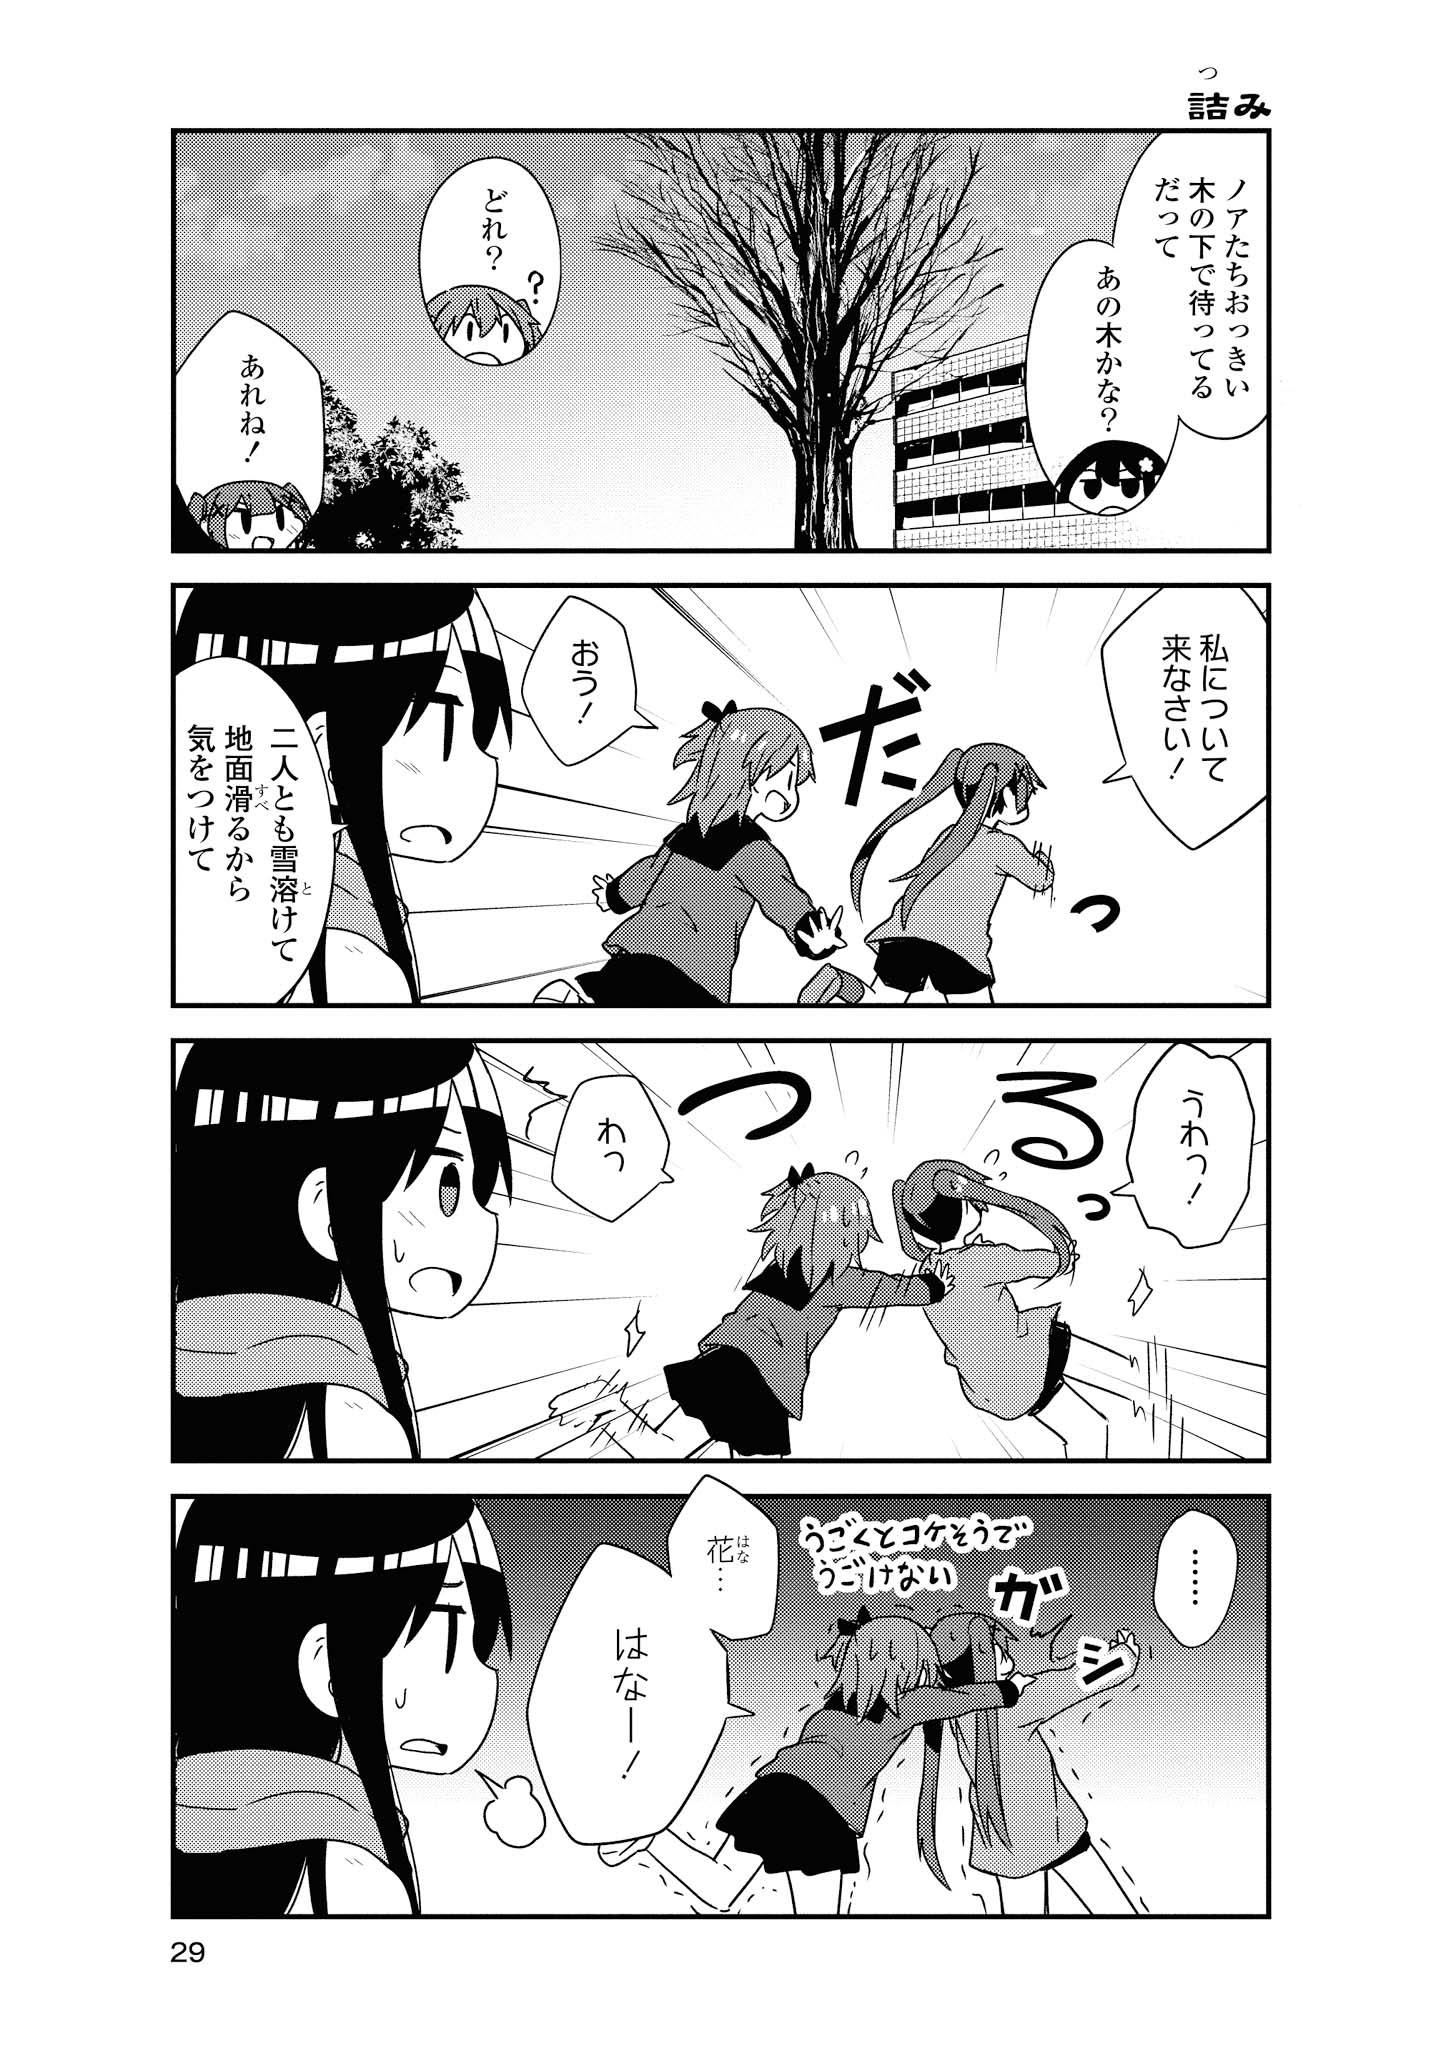 Watashi ni Tenshi ga Maiorita! - Chapter 45 - Page 5